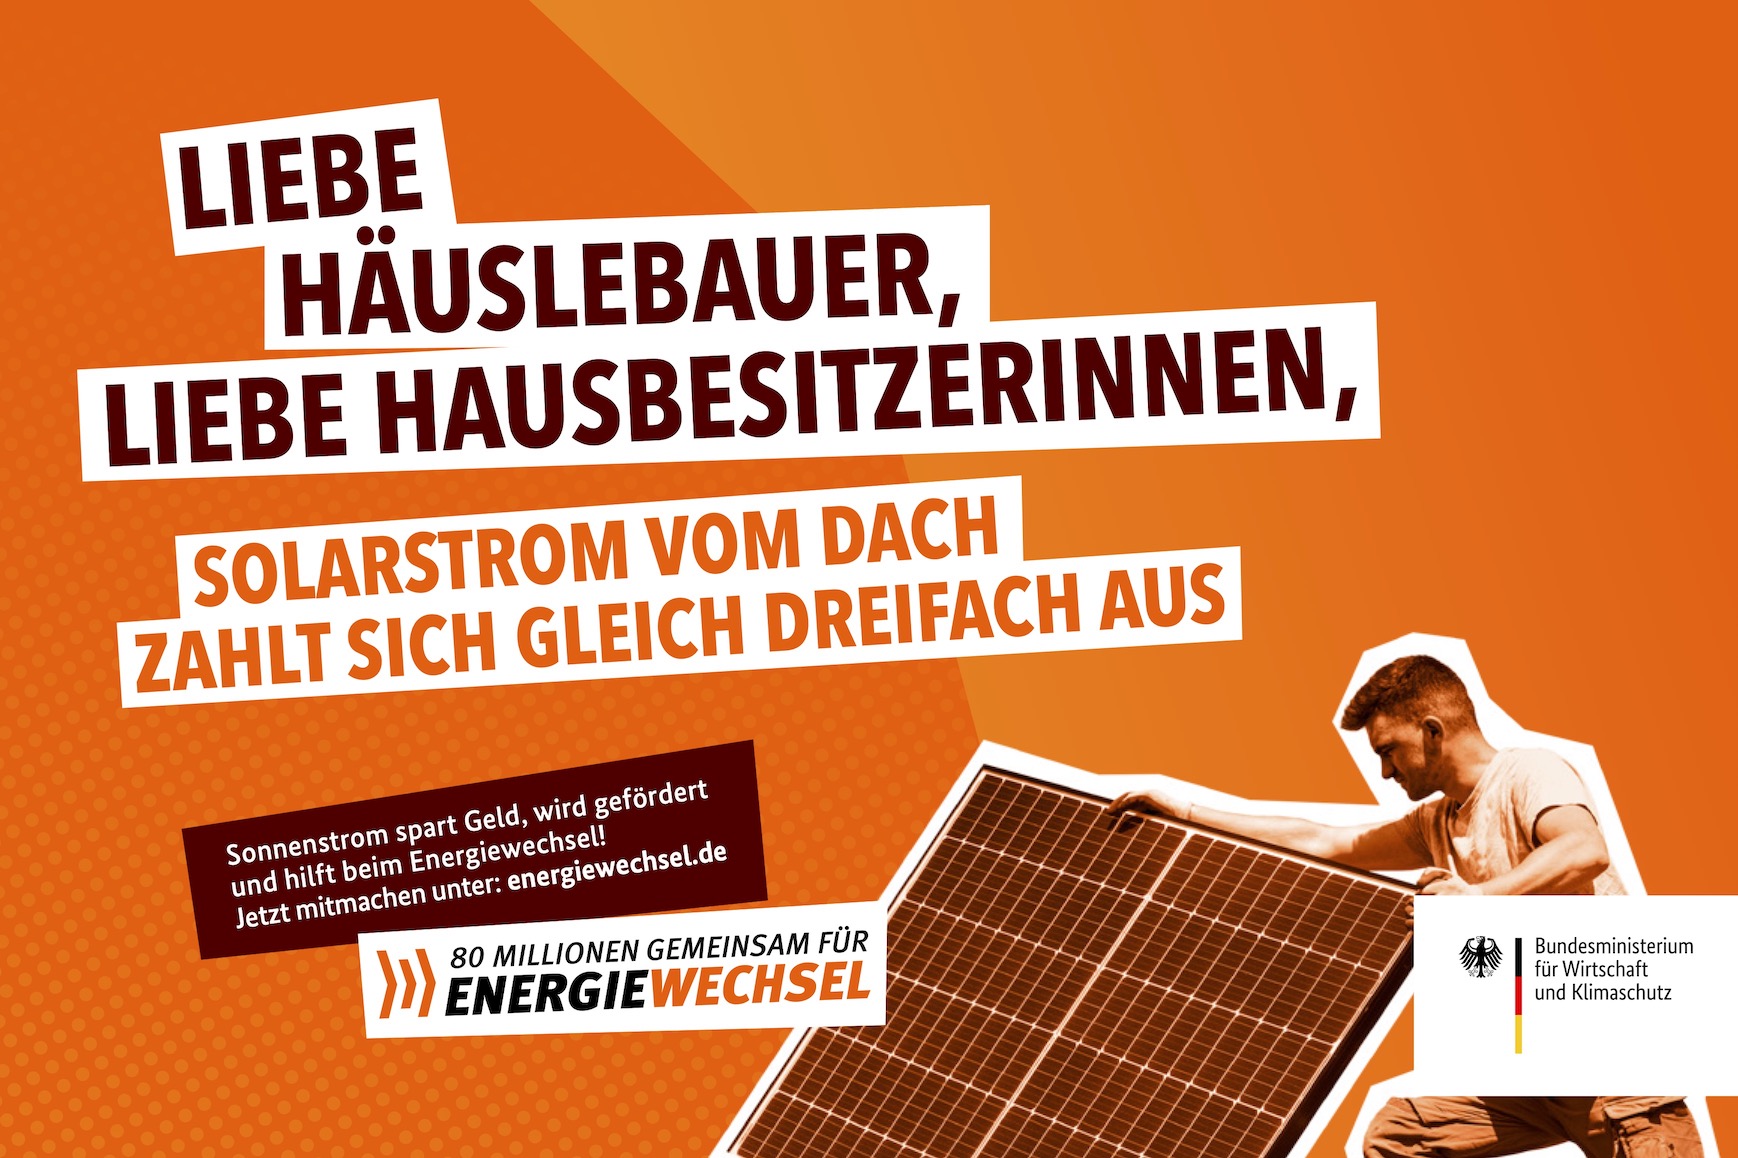 Kampagnenmotiv „Liebe Häuslebauer, liebe Hausbesitzerinnen” | 80 Millionen gemeinsam für Energiewechsel